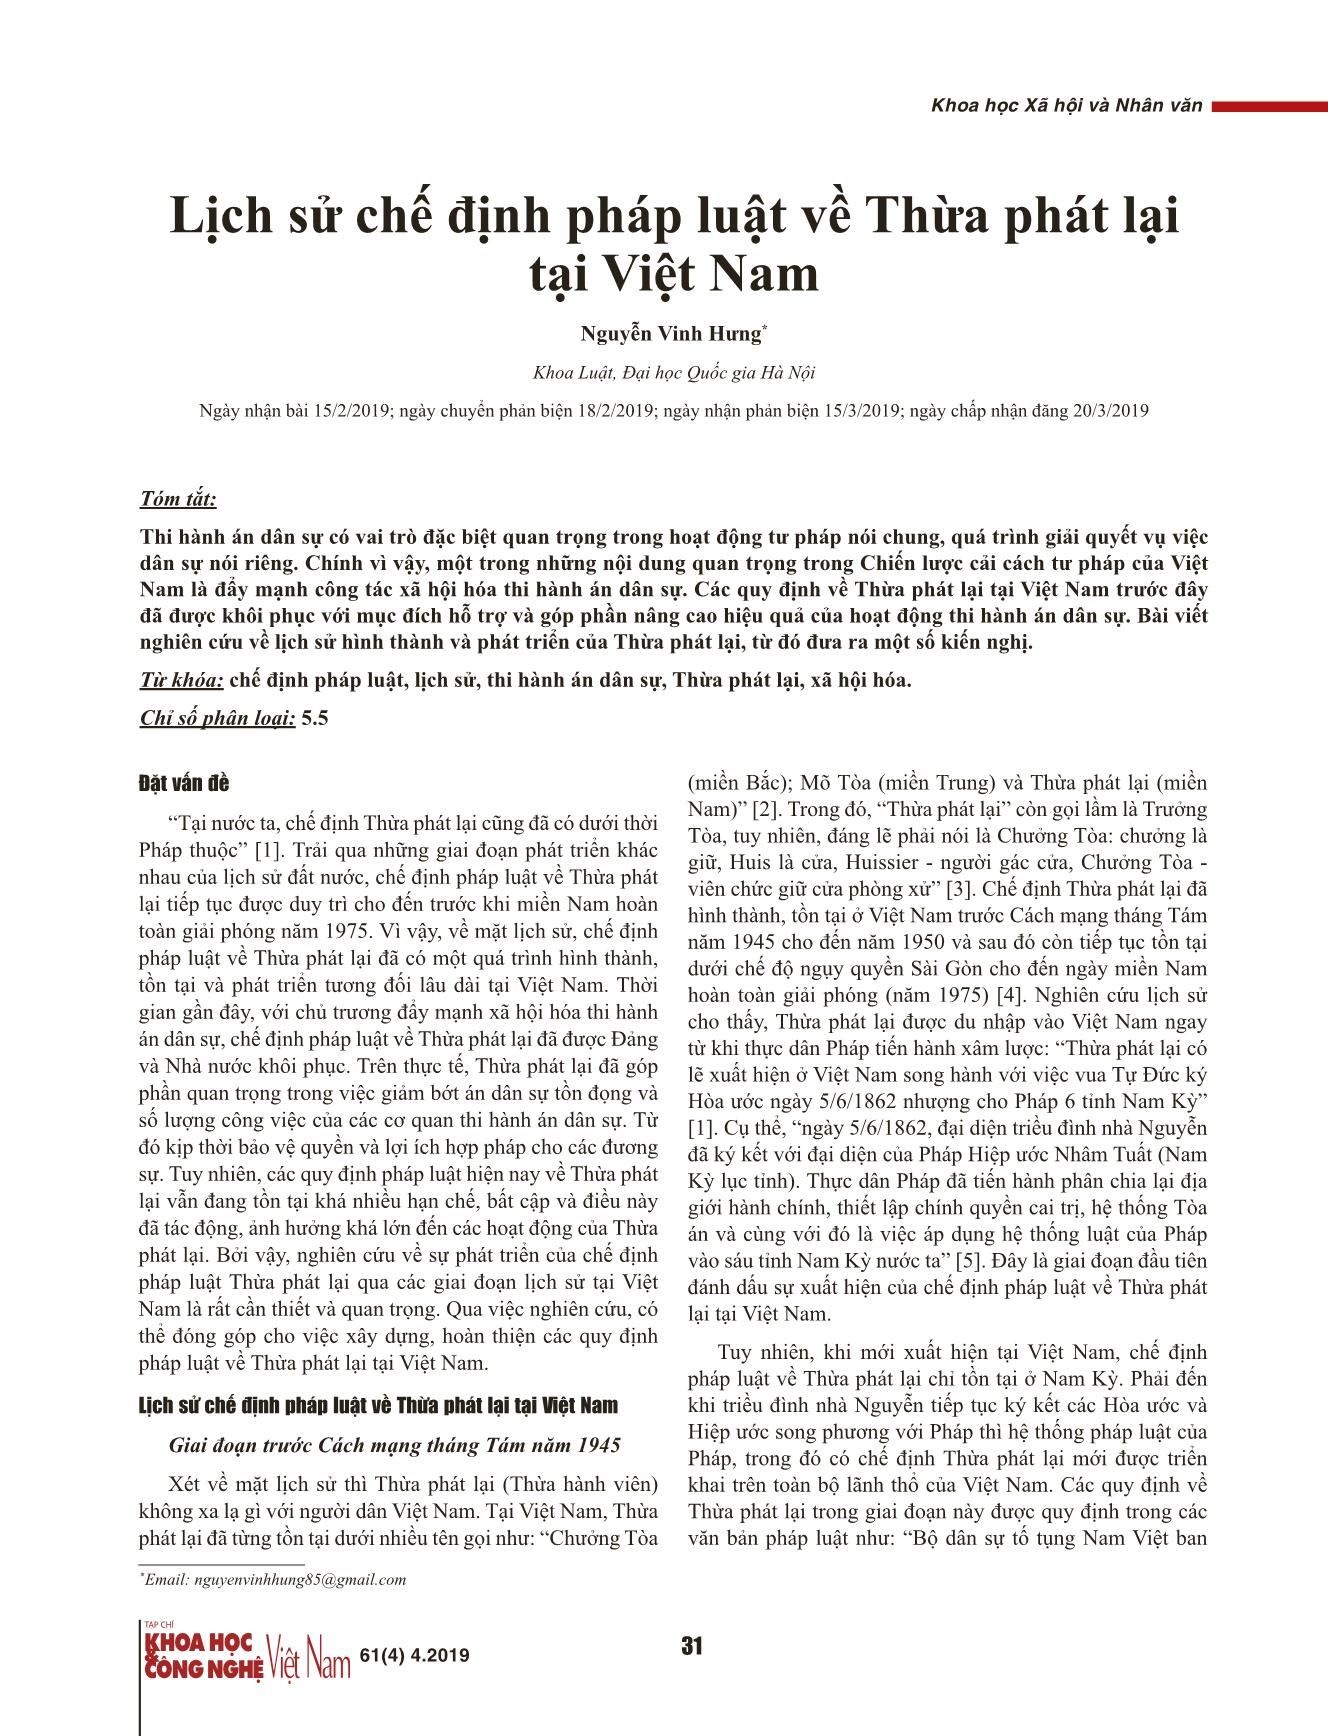 Lịch sử chế định pháp luật về Thừa phát lại tại Việt Nam trang 1